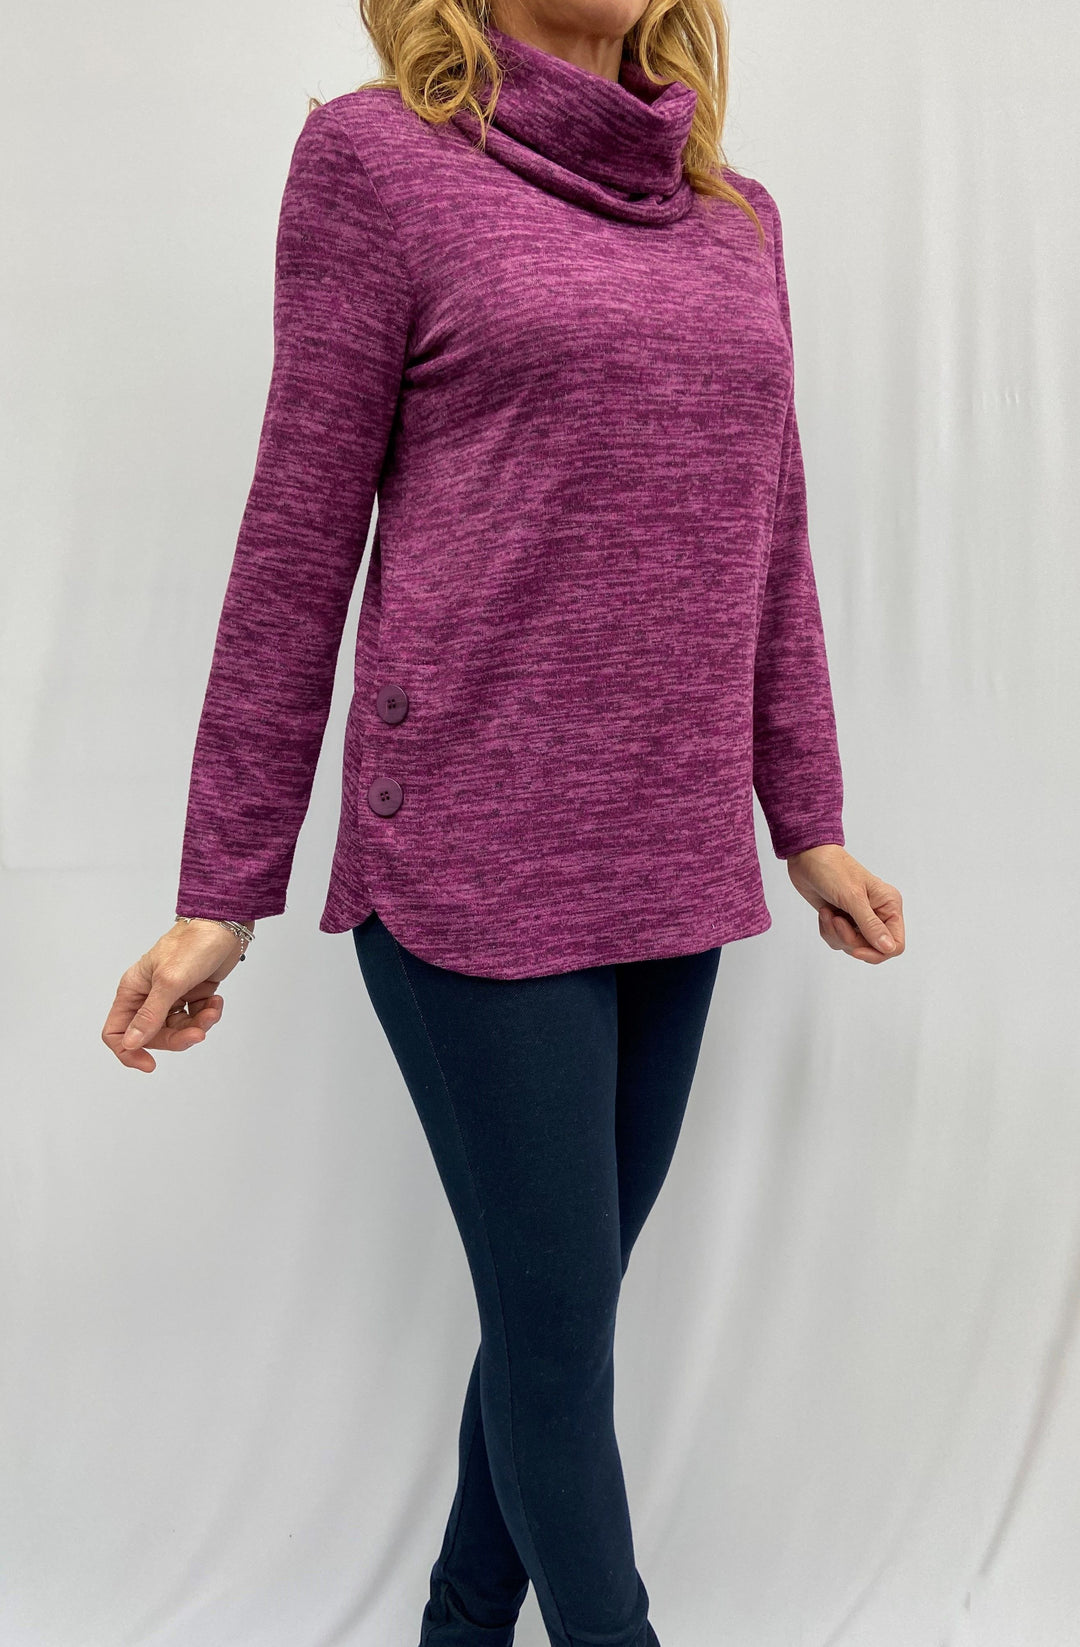 Jasmine Cowl Neck Sweater - Size Large